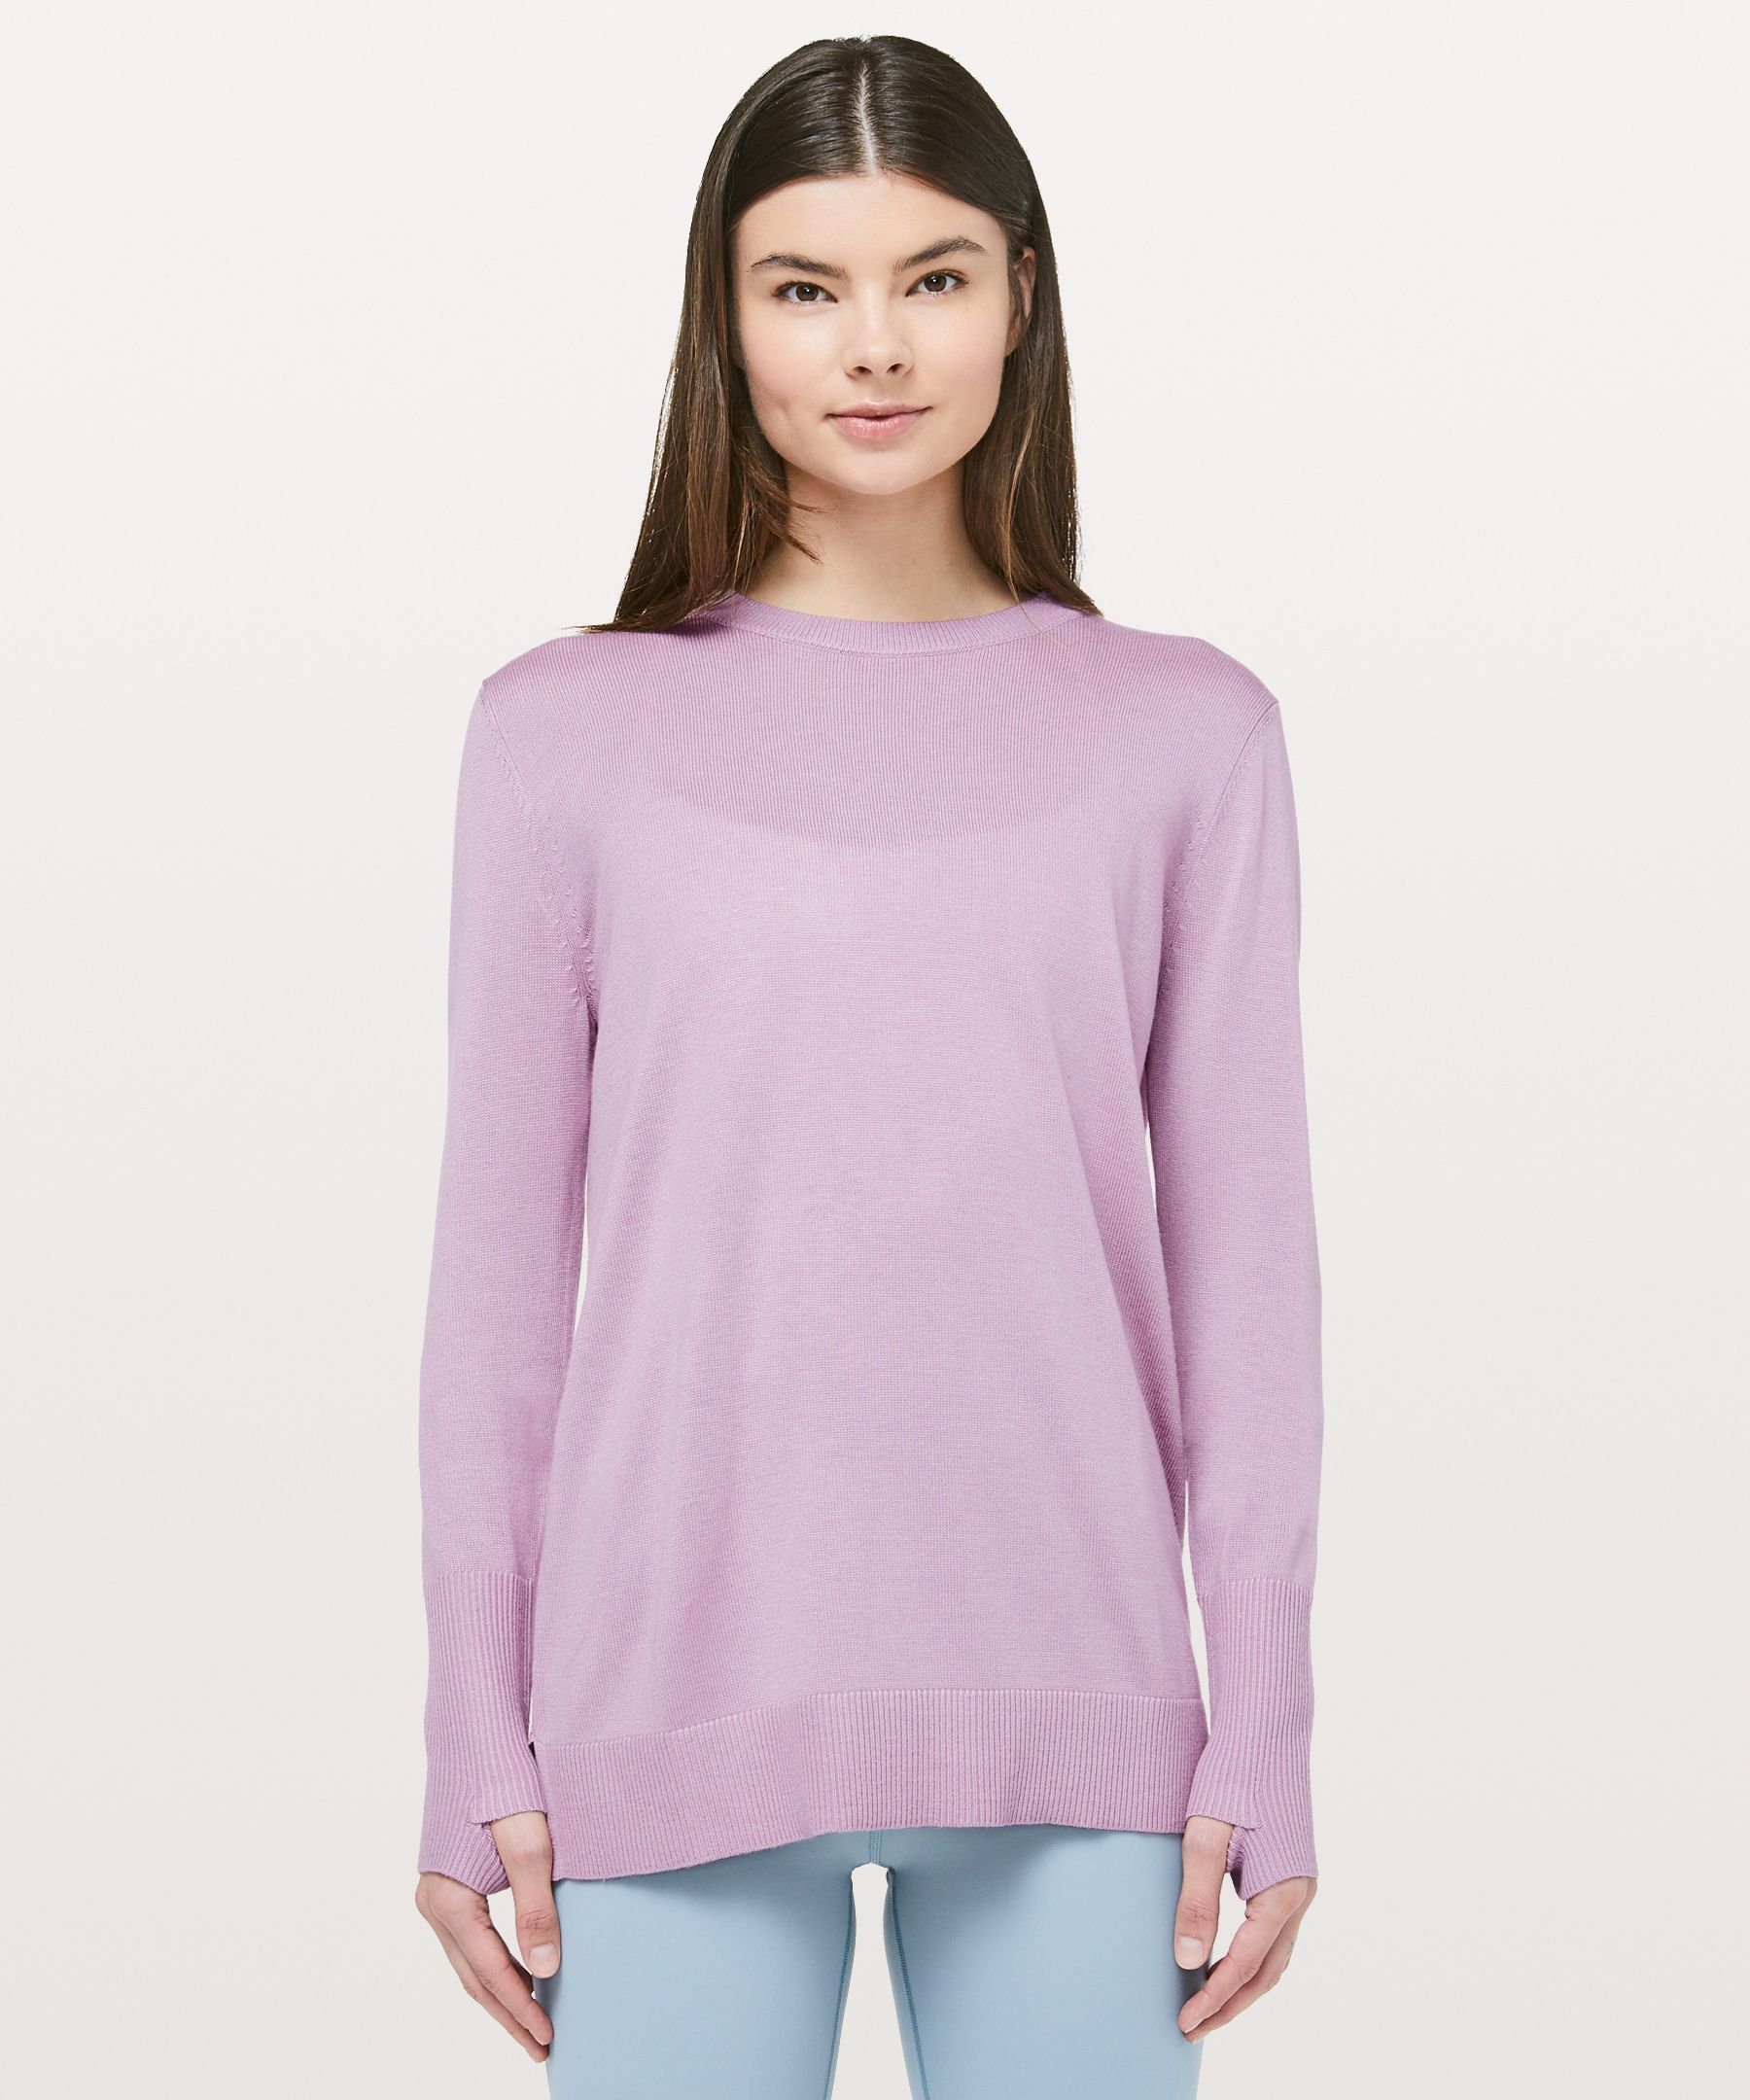 lululemon purple sweater